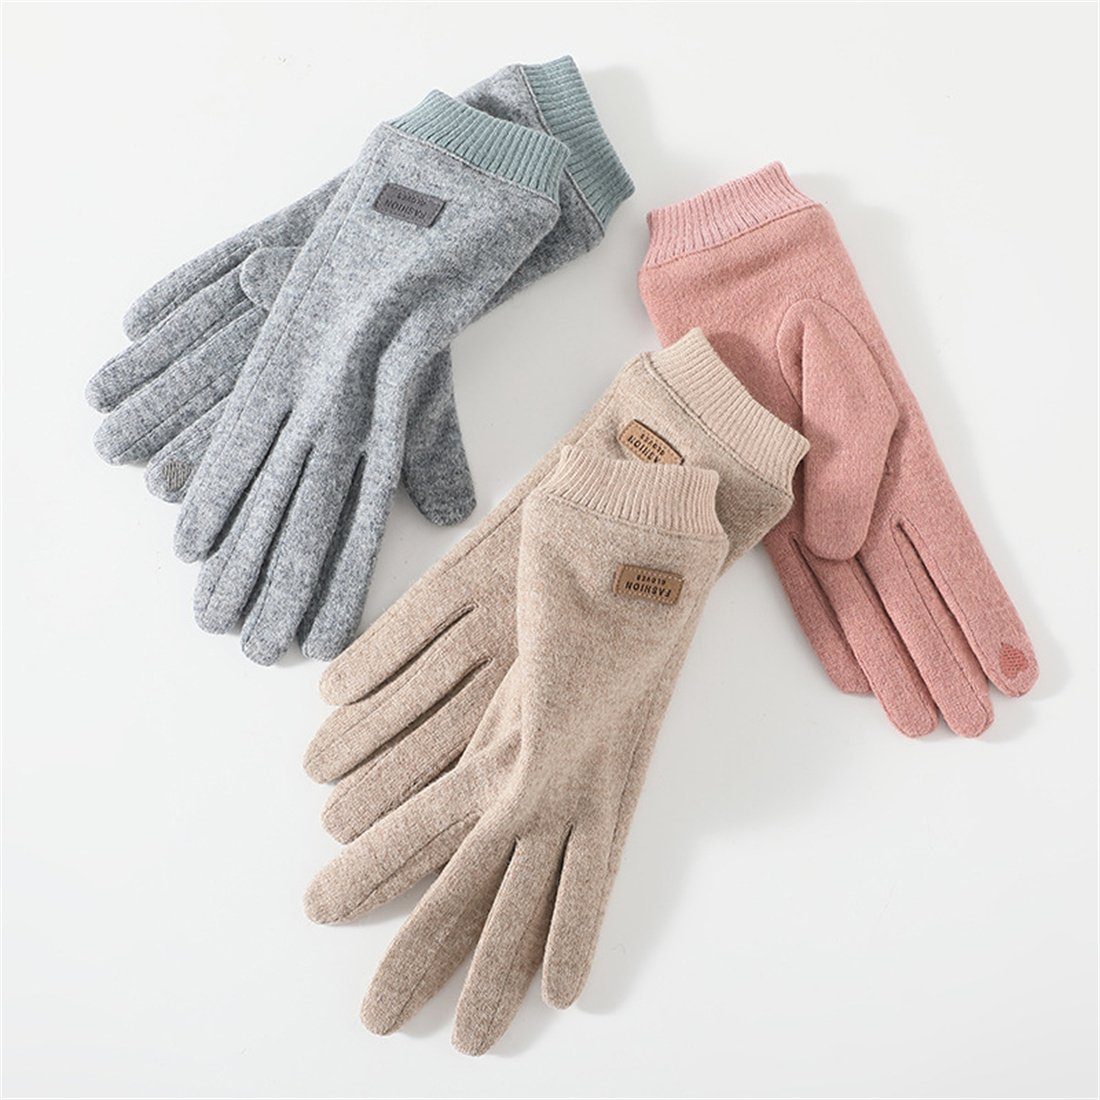 aus Frauen, khaki DÖRÖY Winterhandschuhe Fleecehandschuhe für Kaschmir warme Touchscreen-Handschuhe